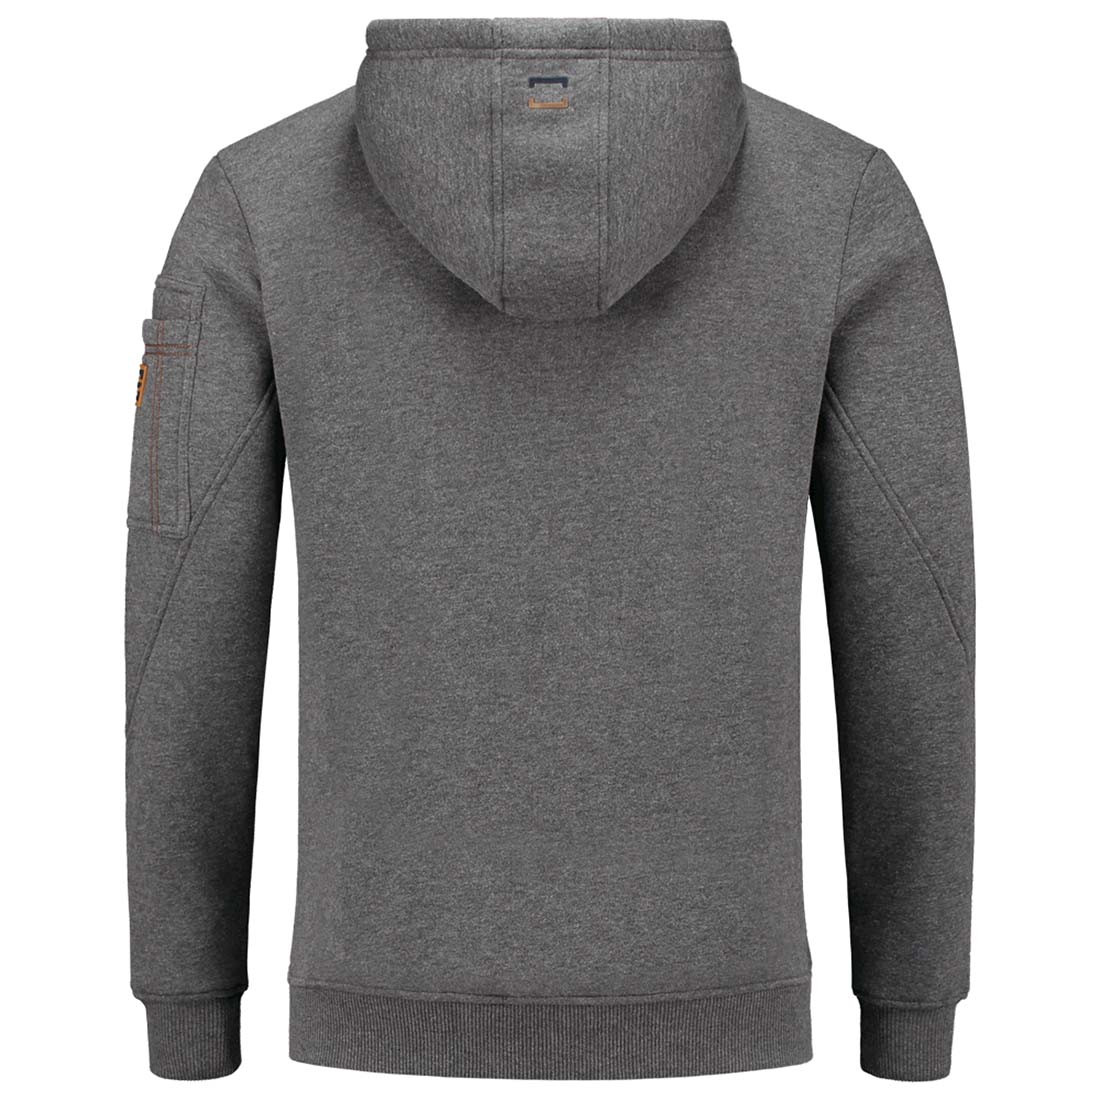 PREMIUM Men's Hooded Sweater - Safetywear